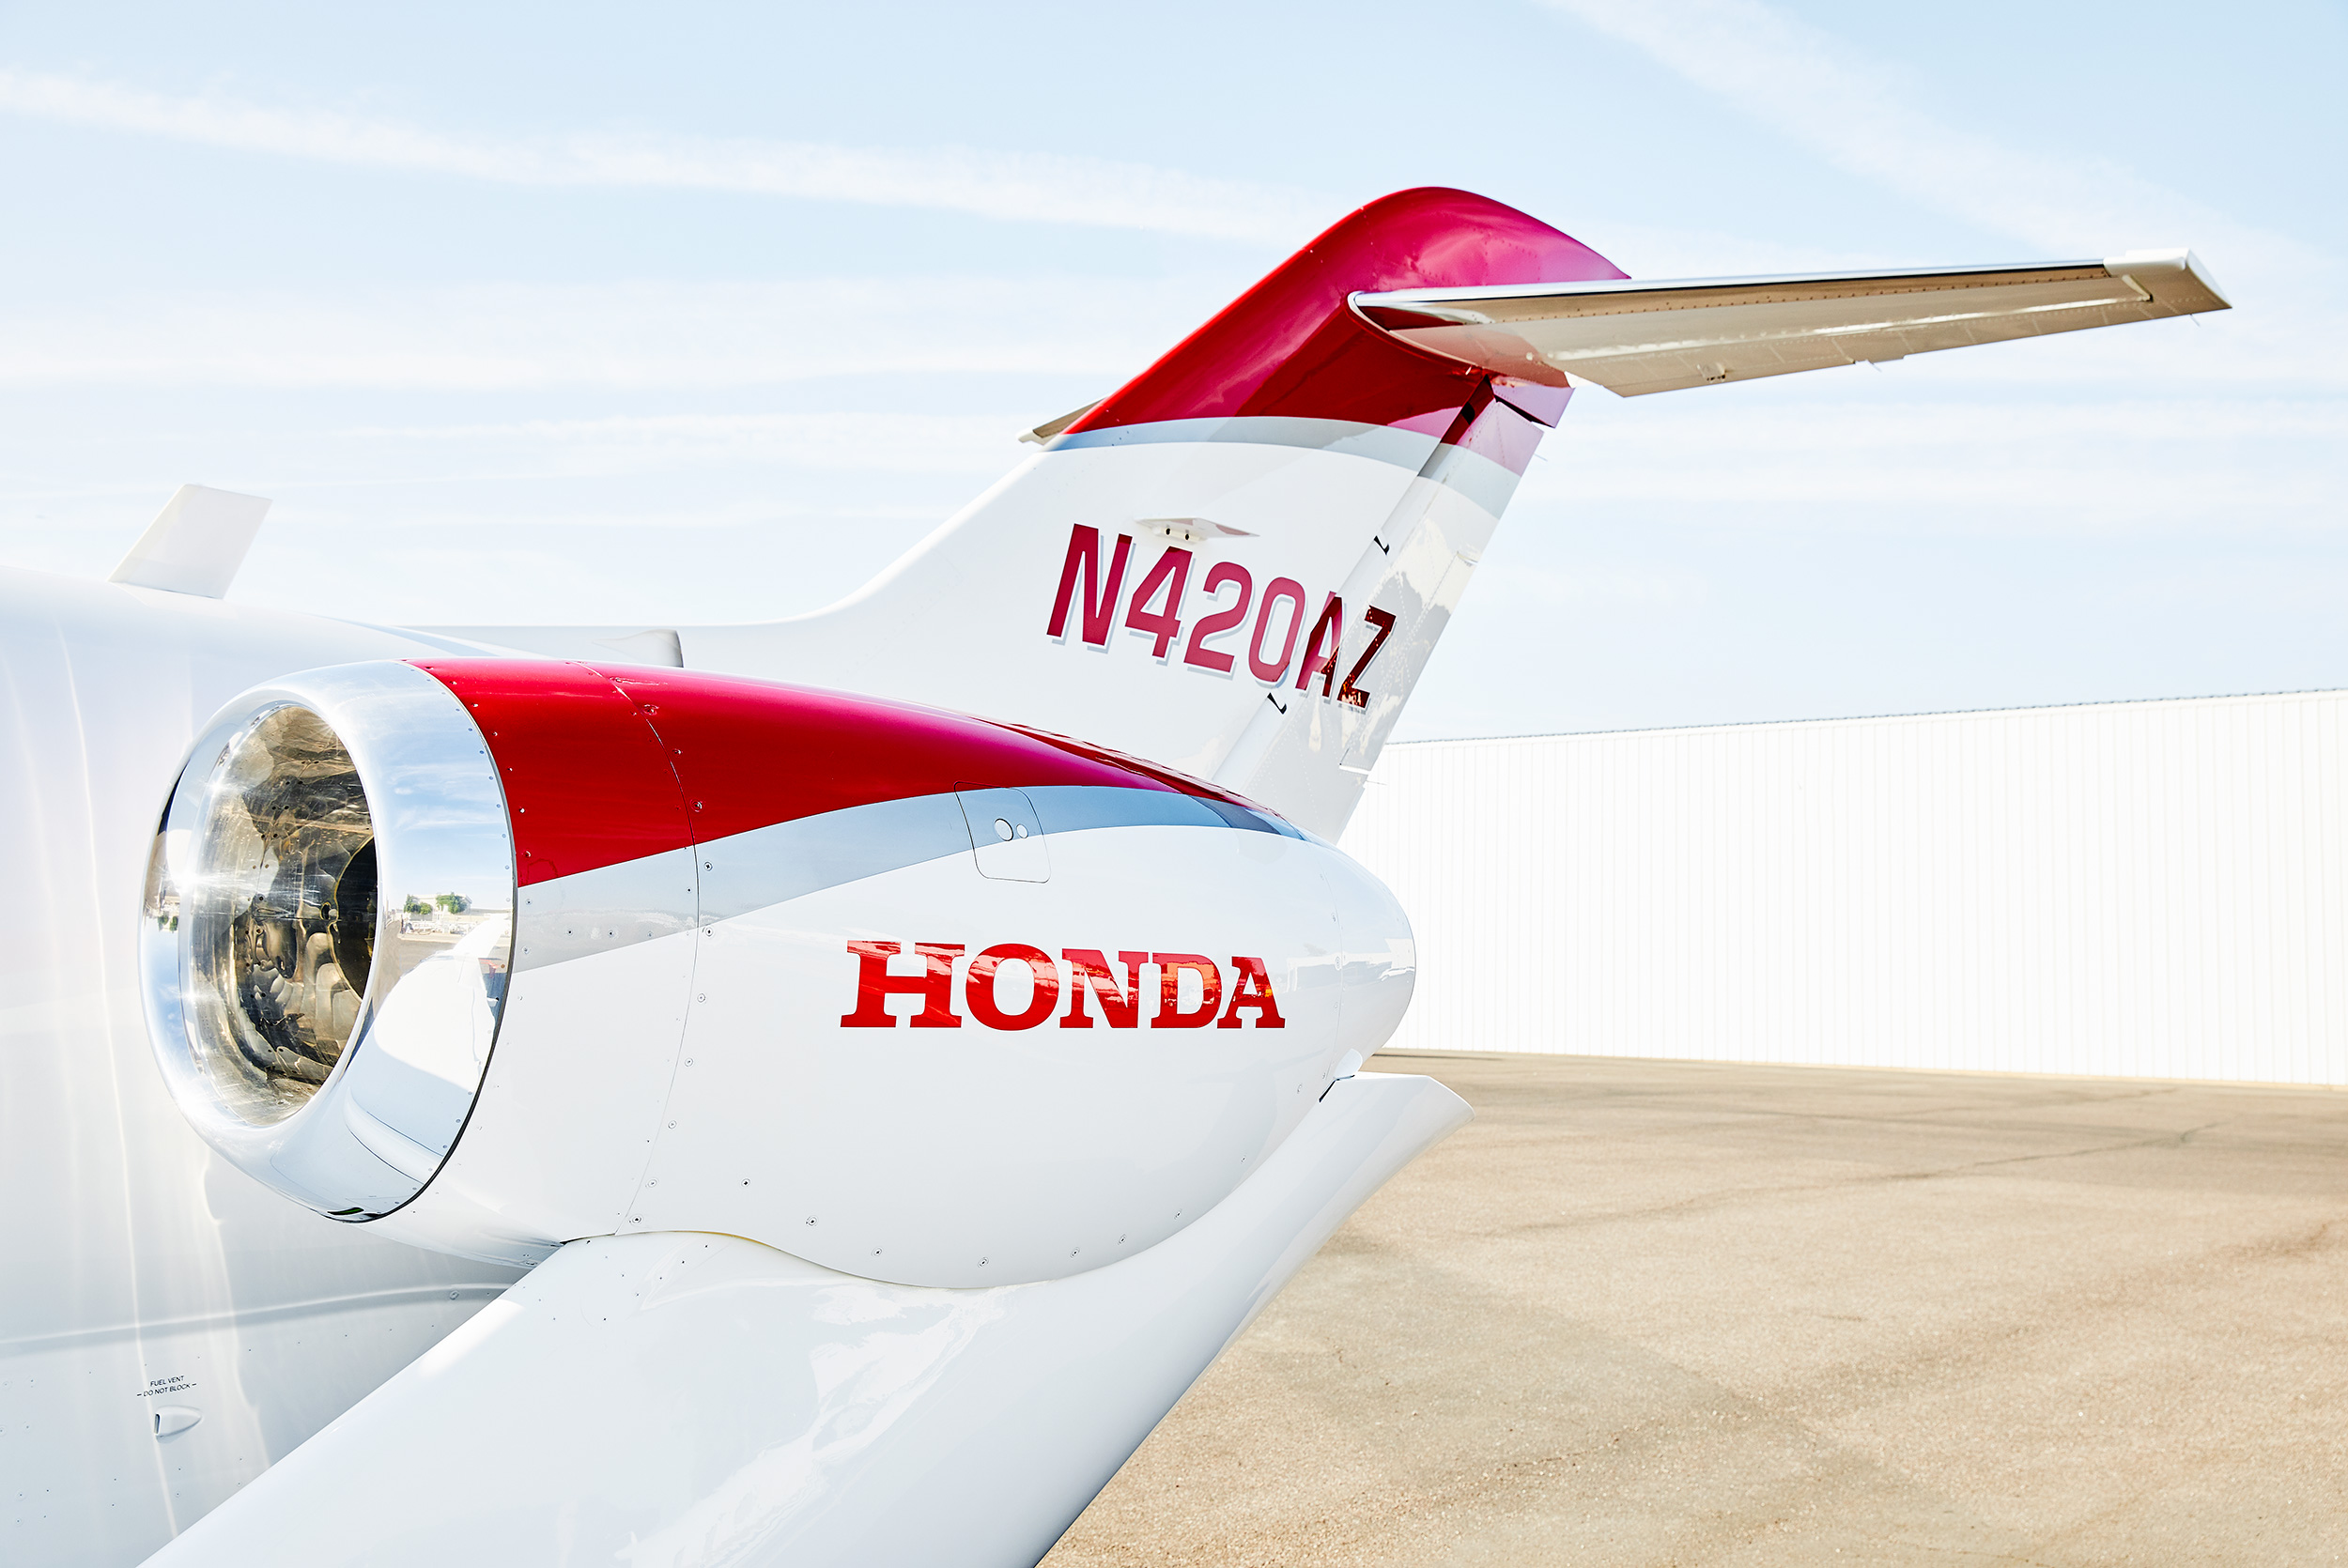 Hondajet Scottsdale - Steve Craft Photography, Phoenix, Arizona based Commercial, Aviation & Industrial Photographer